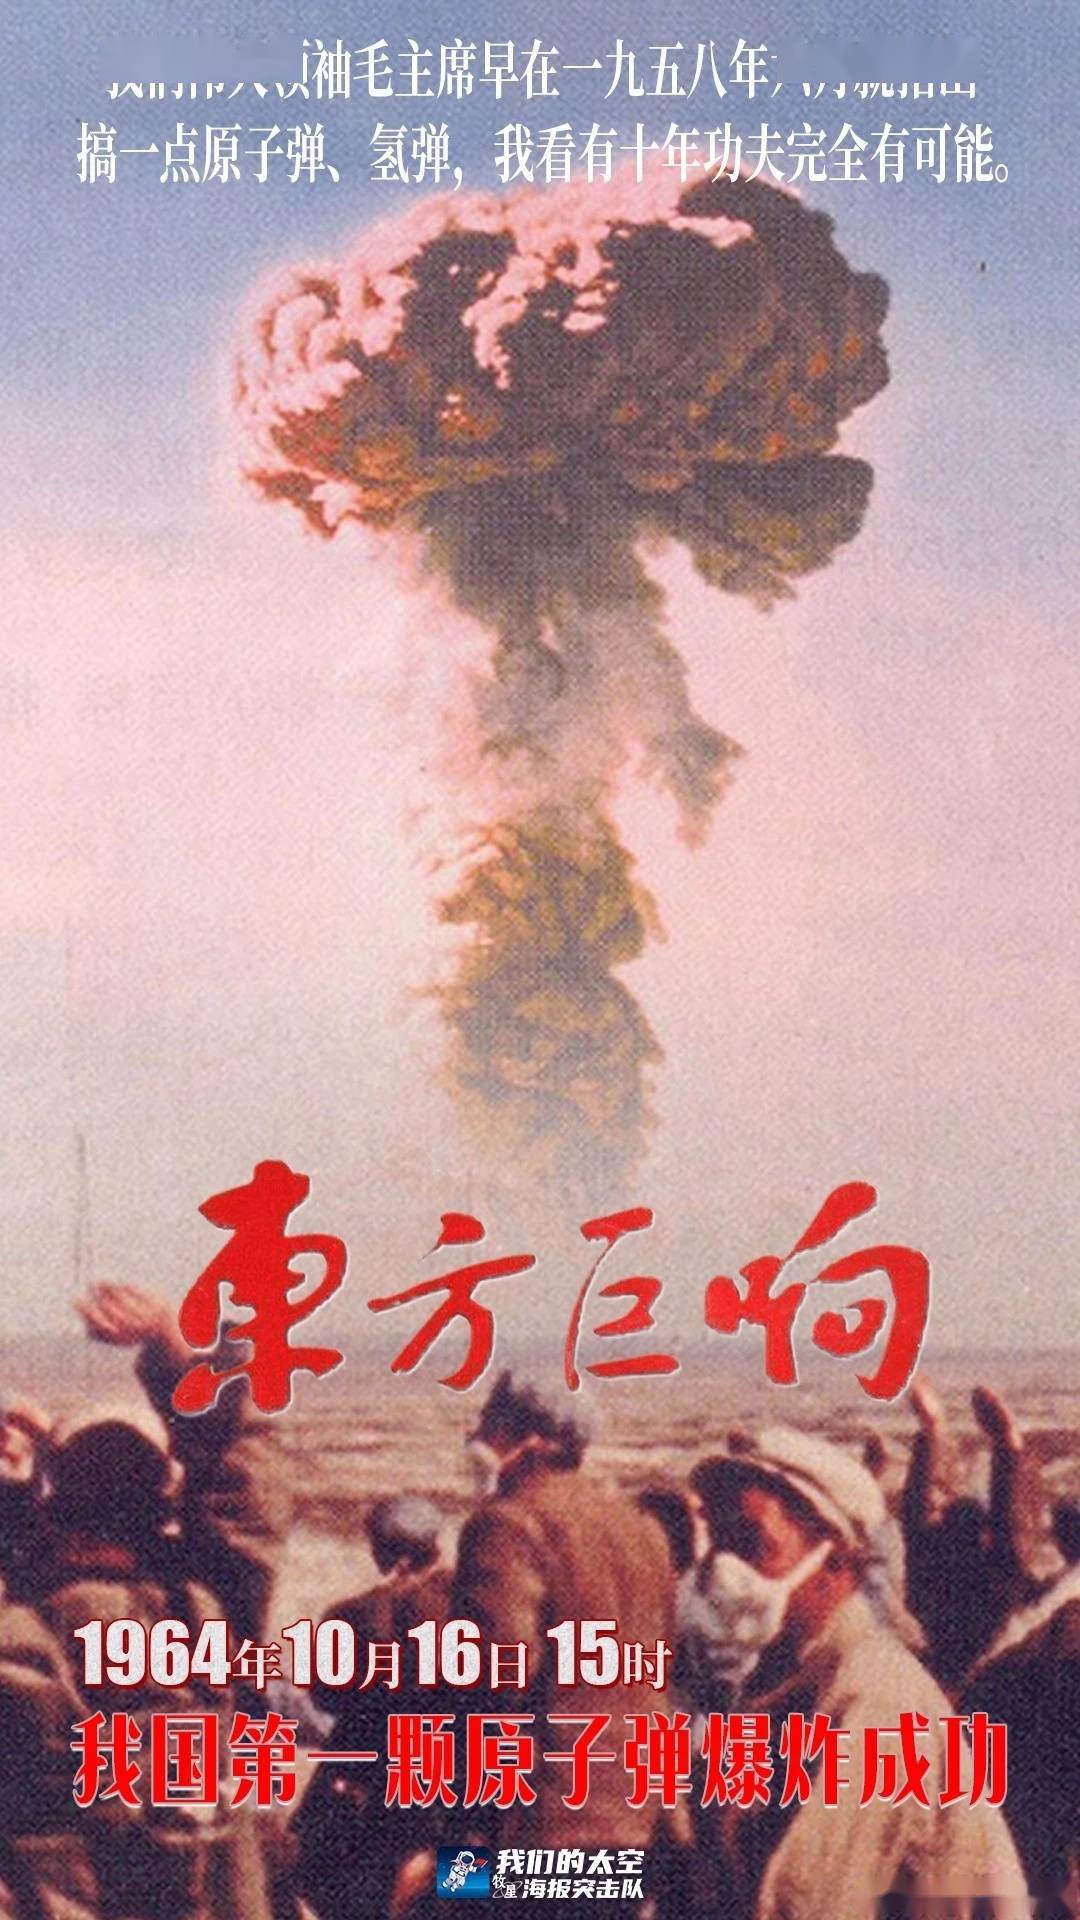 中国原子弹爆炸成功57周年！今天，致敬“两弹一星”元勋-新闻中心-南海网